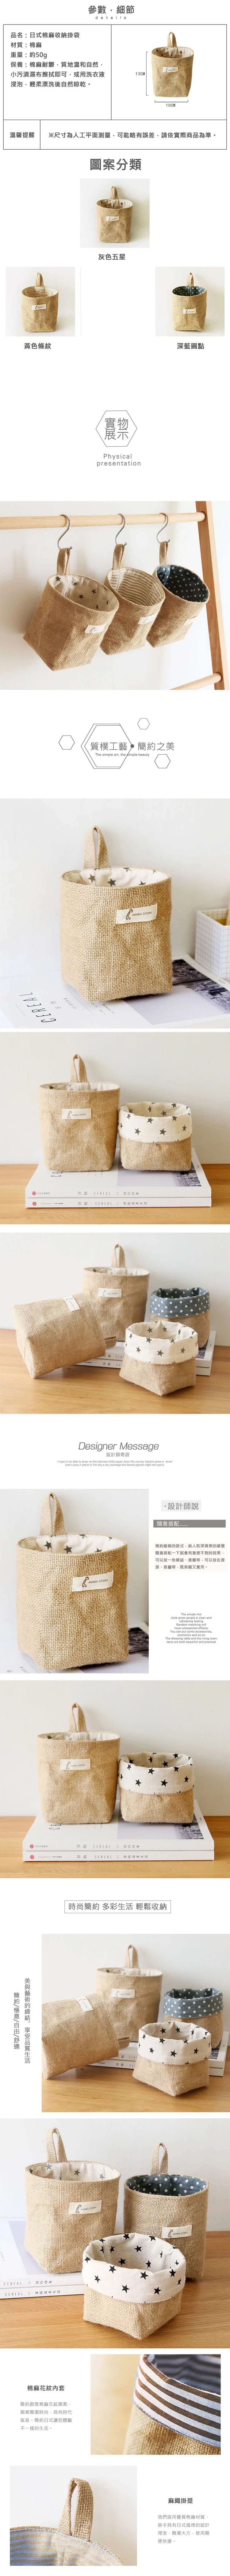 耐用 日式 日式 棉麻 可掛式 耐用